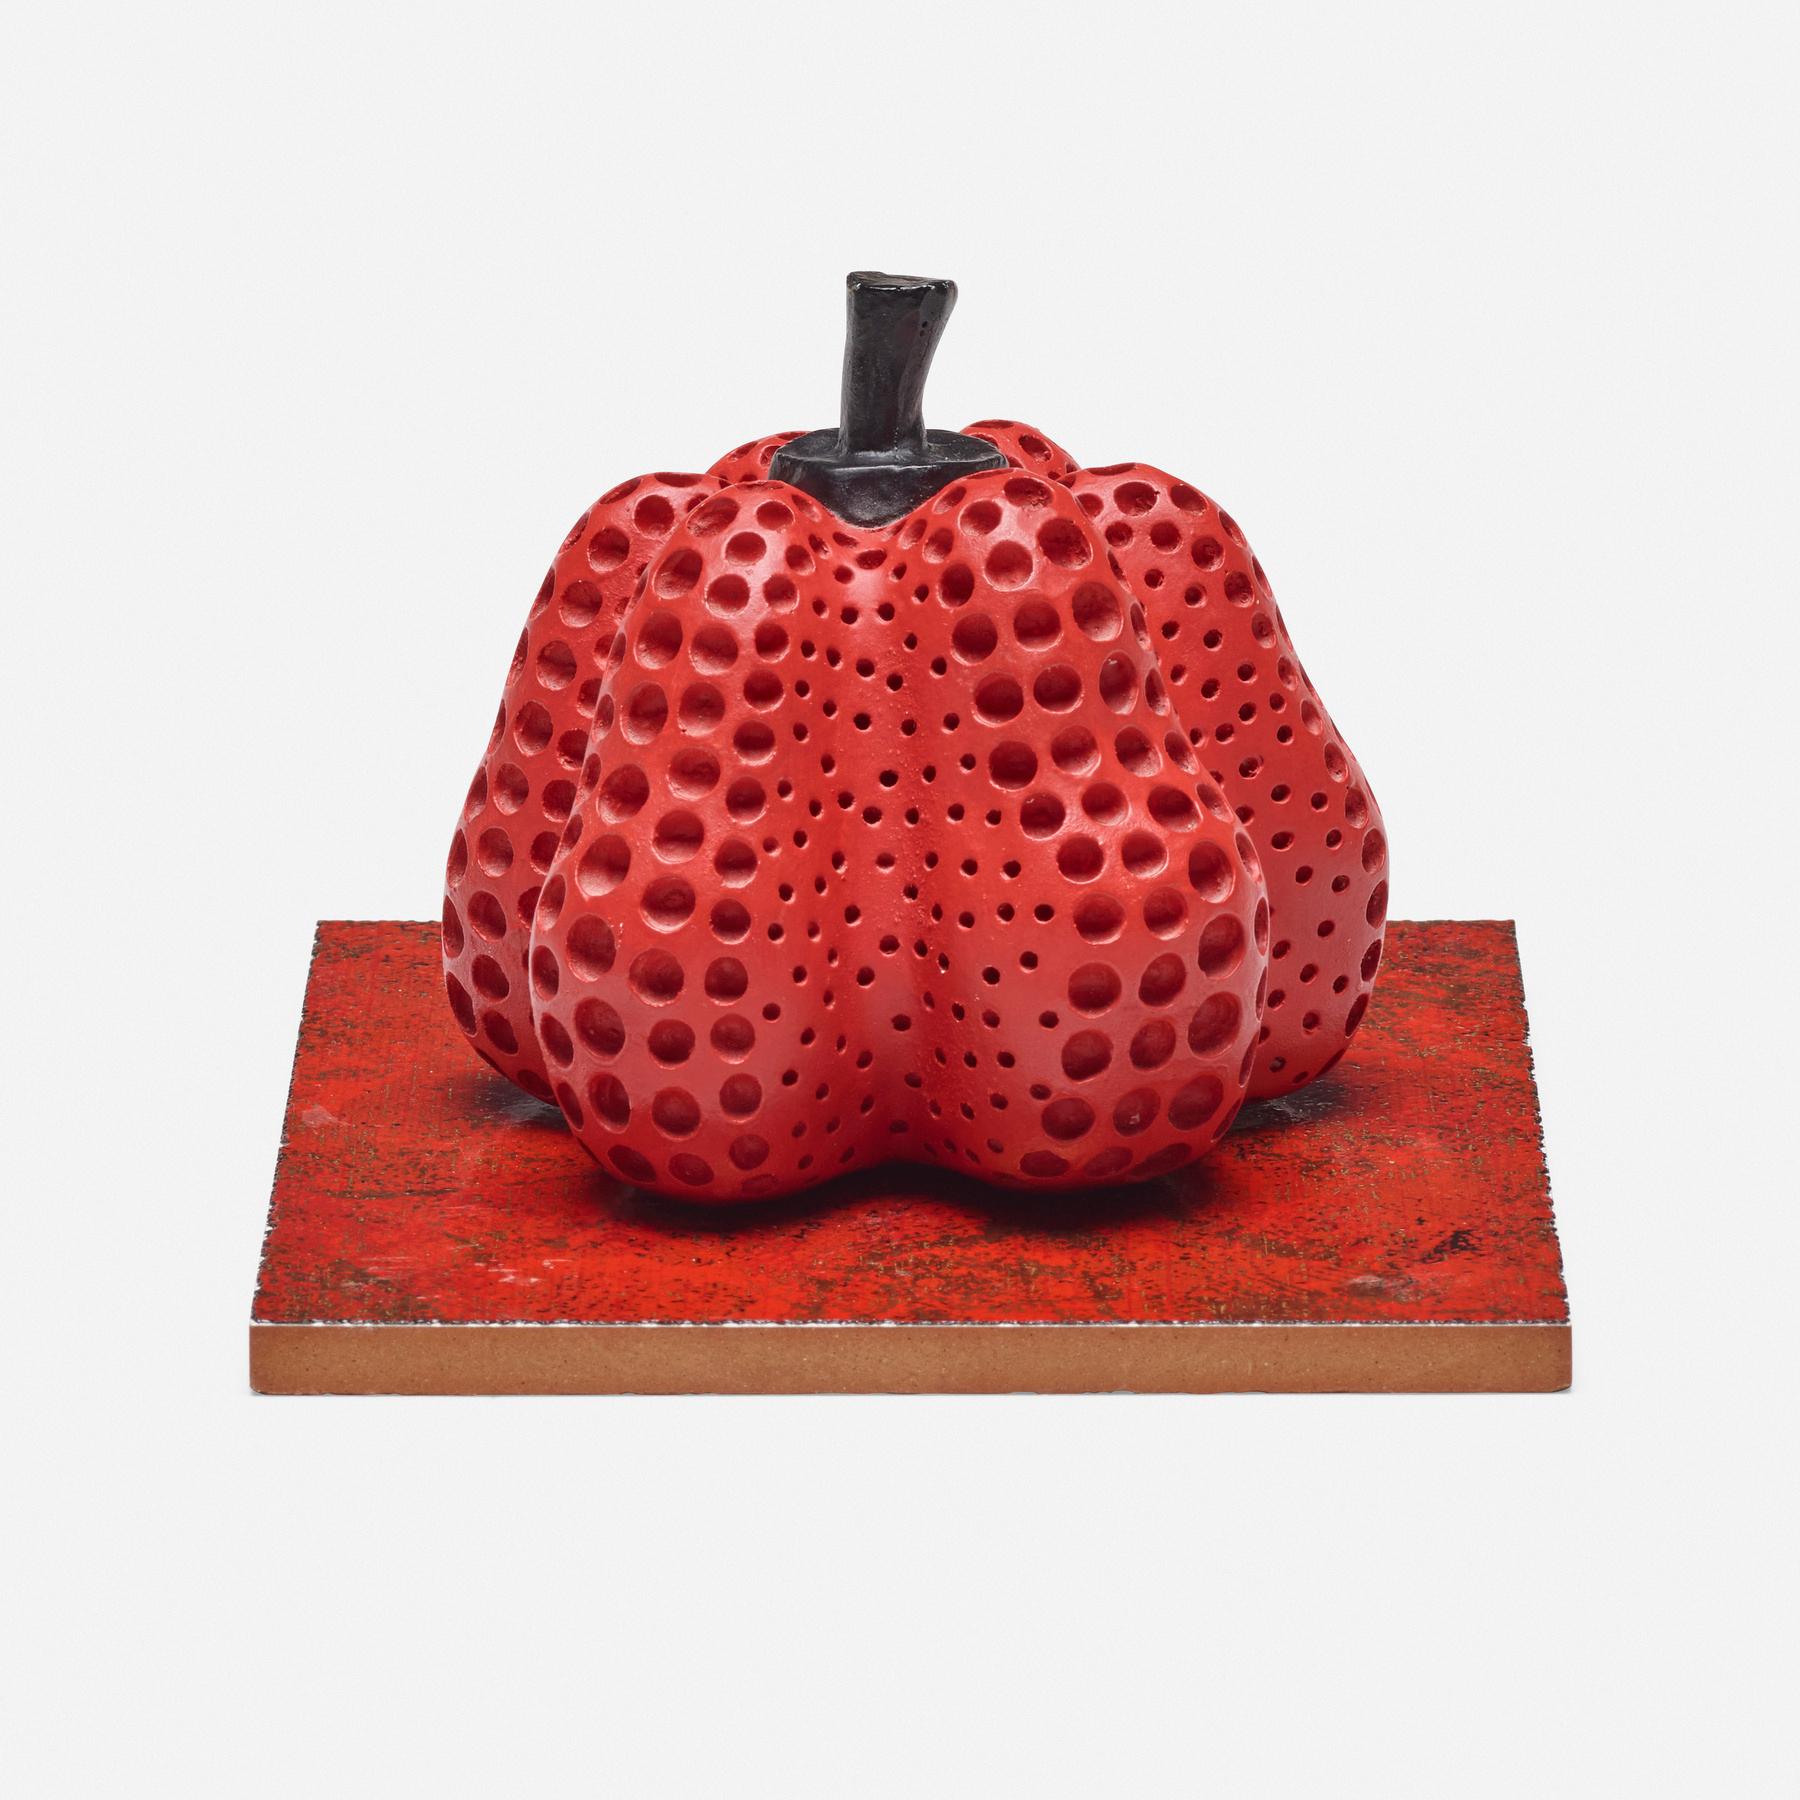 Original Limited Edition 7/30 handsignierte und nummerierte Pumpkin-Skulptur (Rot) in limitierter Auflage